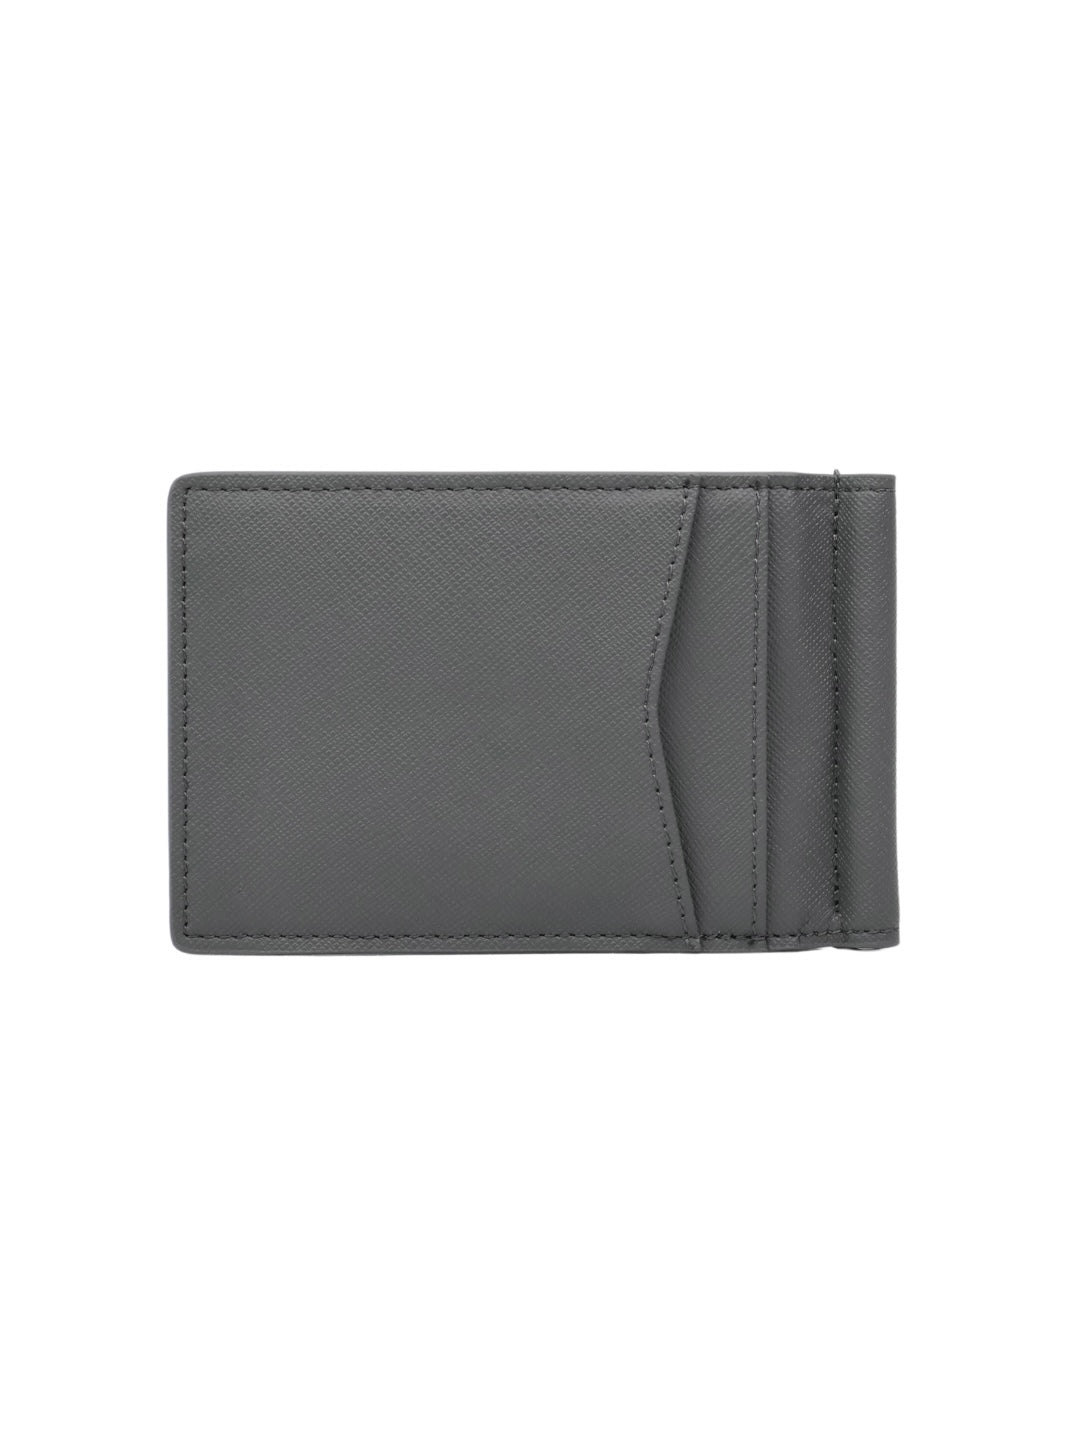 Lucas Money Clip Wallet – Rachel Smith Designer Sdn Bhd